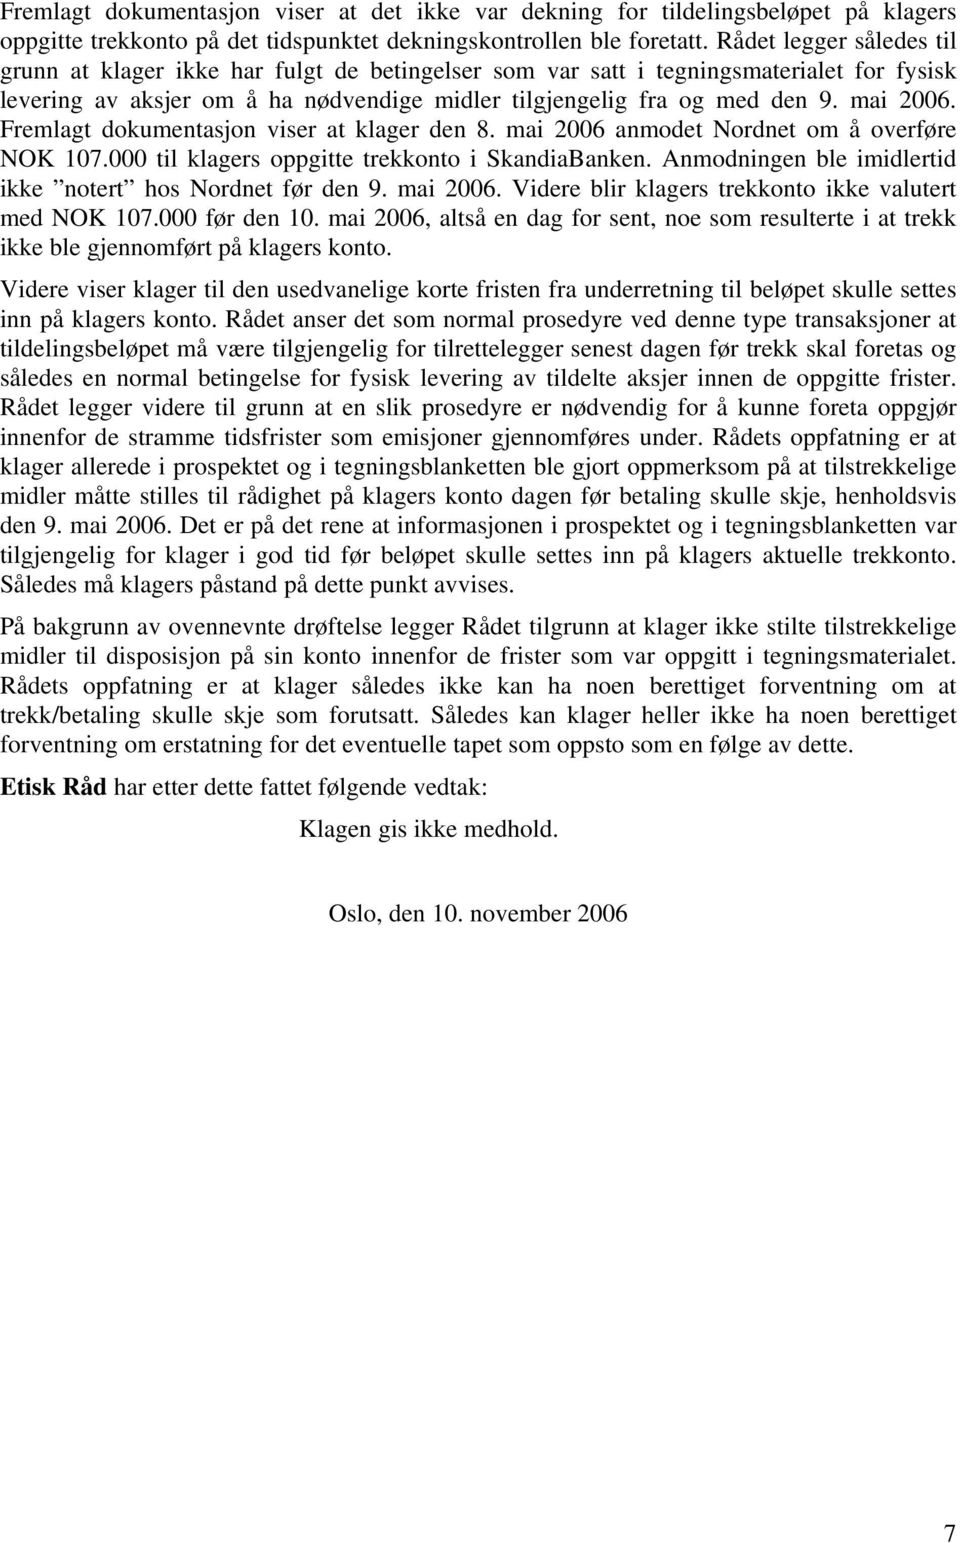 mai 2006. Fremlagt dokumentasjon viser at klager den 8. mai 2006 anmodet Nordnet om å overføre NOK 107.000 til klagers oppgitte trekkonto i SkandiaBanken.